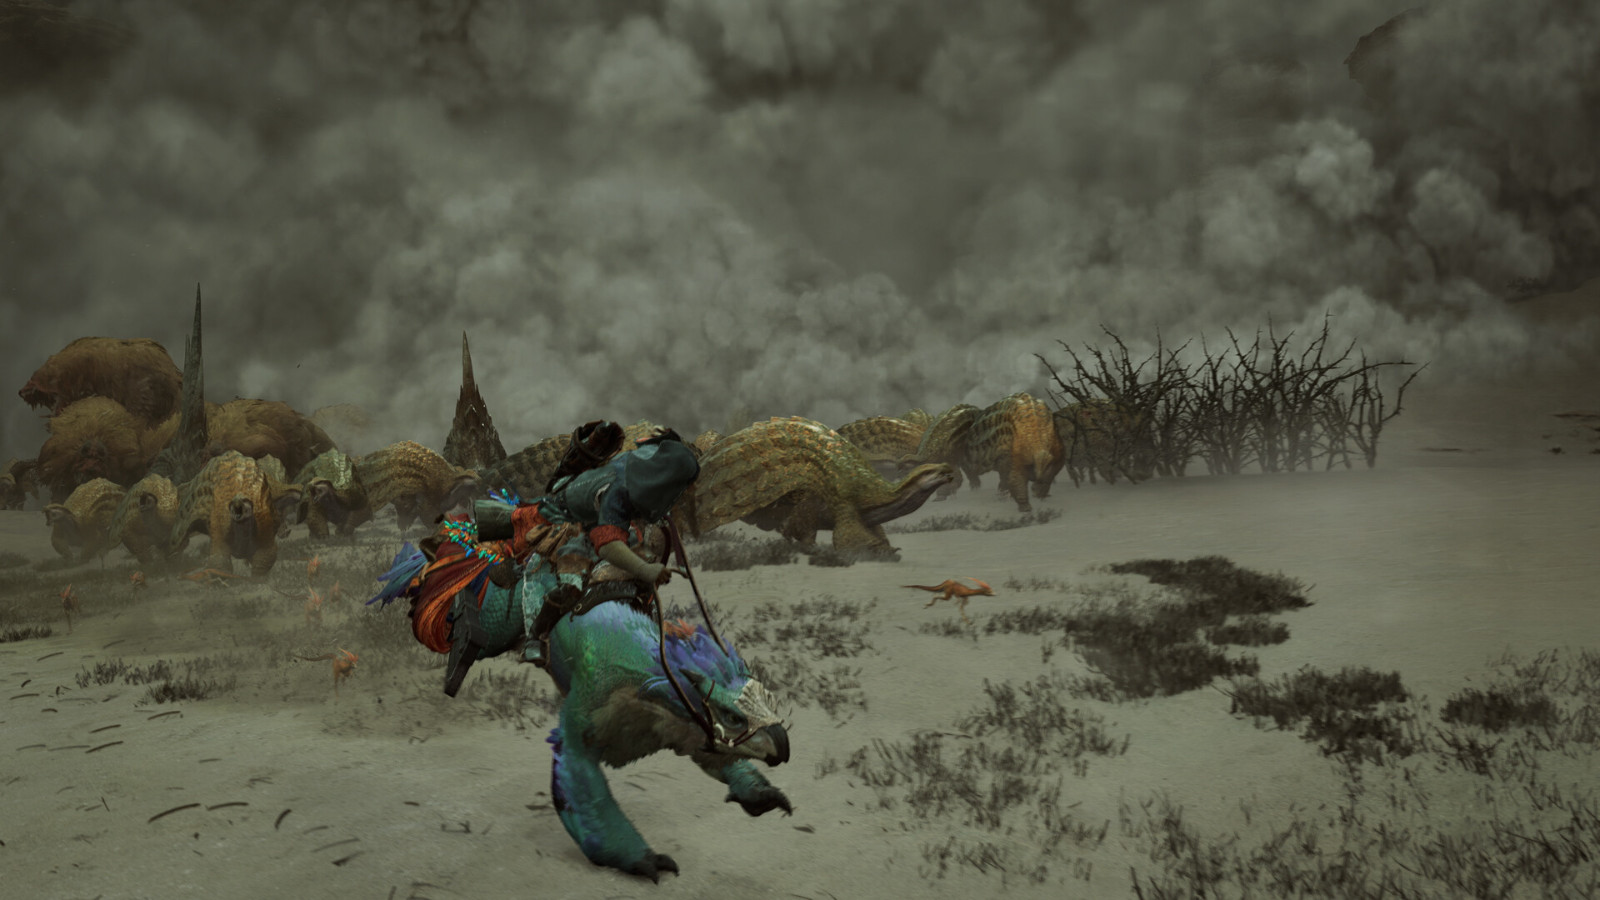 《怪物獵人：荒野》Steam頁麪上線 2025年發售